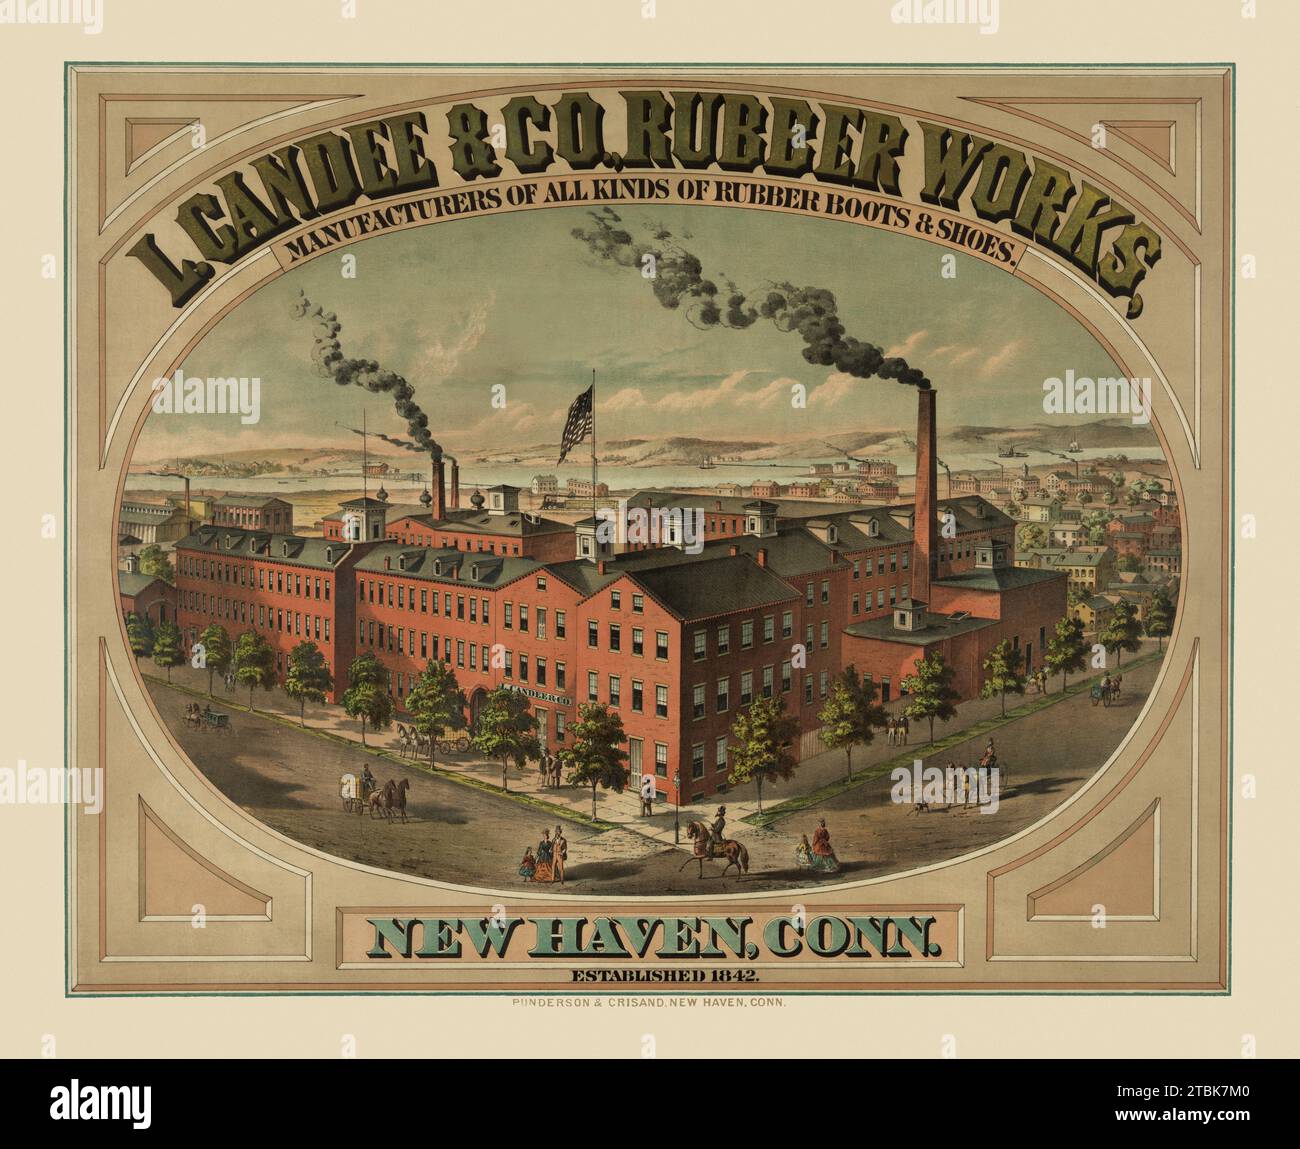 "L. Candee & Co., Rubber Works, produttori di tutti i tipi di stivali e calzature in gomma. New Haven, Conn. Fondata nel 1842" Foto Stock